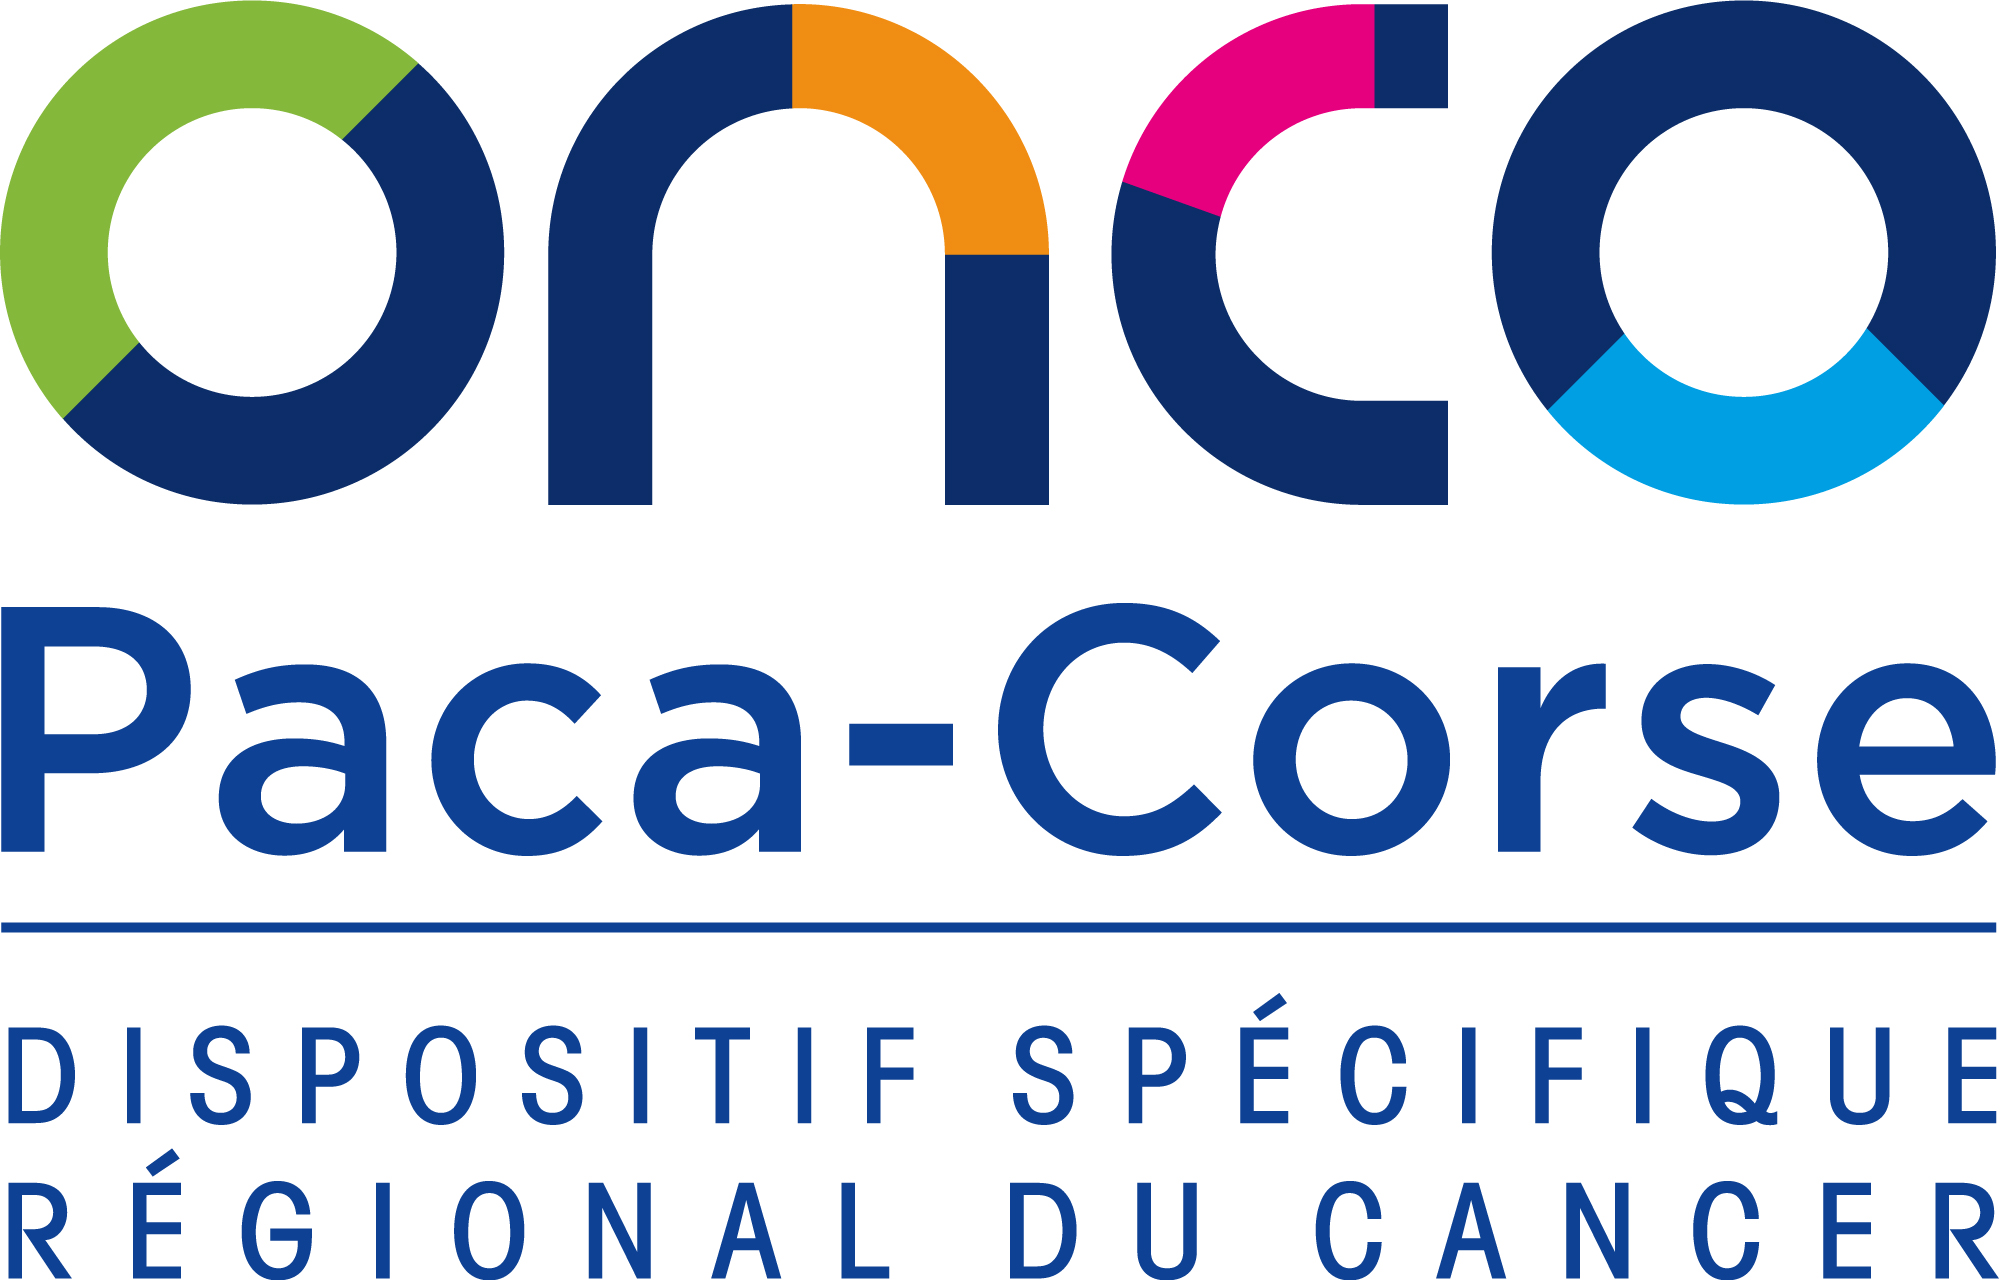 Dispositif Spécifique Régional du Cancer OncoPaca-Corse